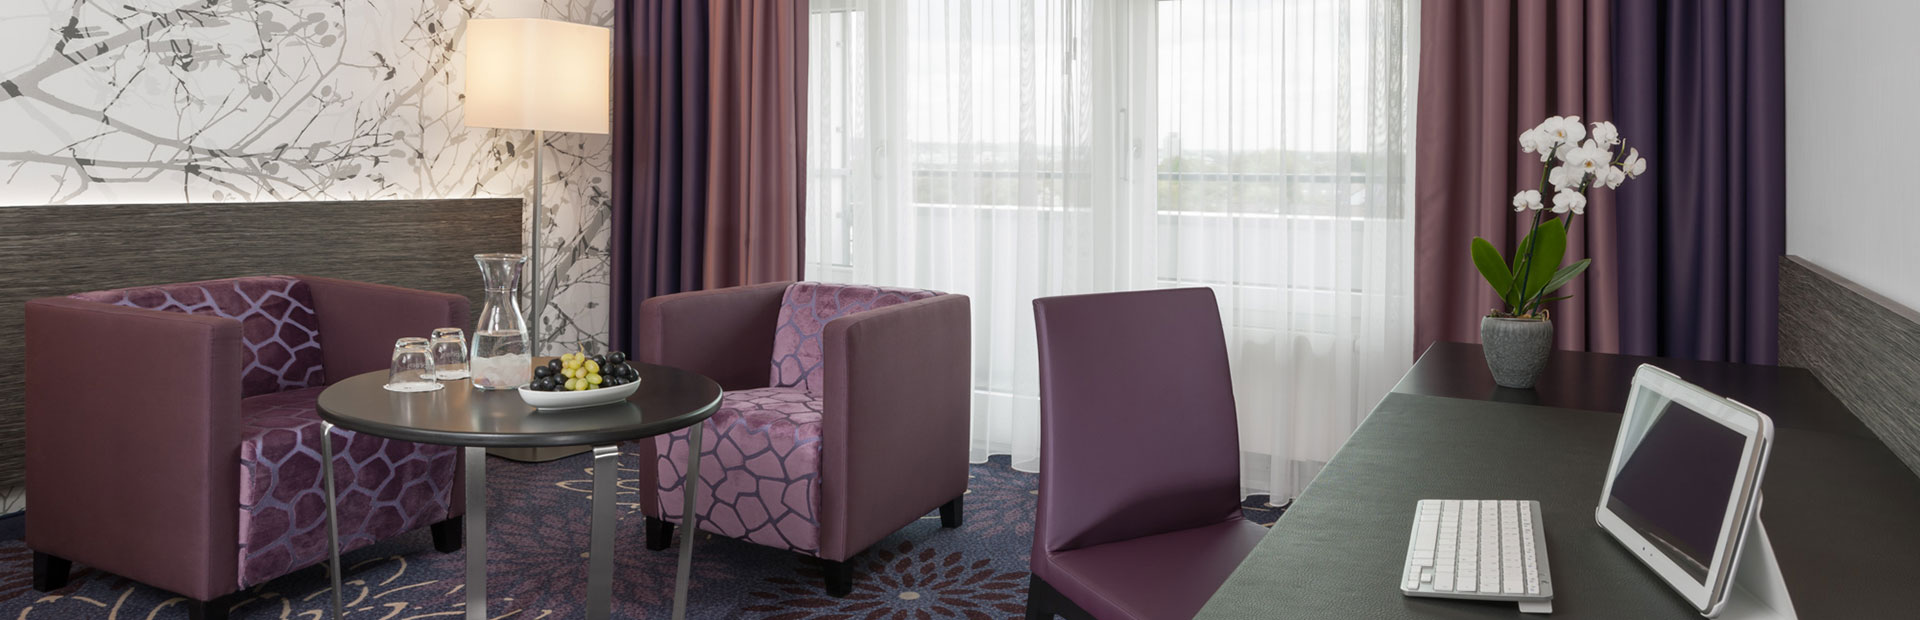 Komfortables Standard-Zimmer mit stilvoller lila Sitzecke